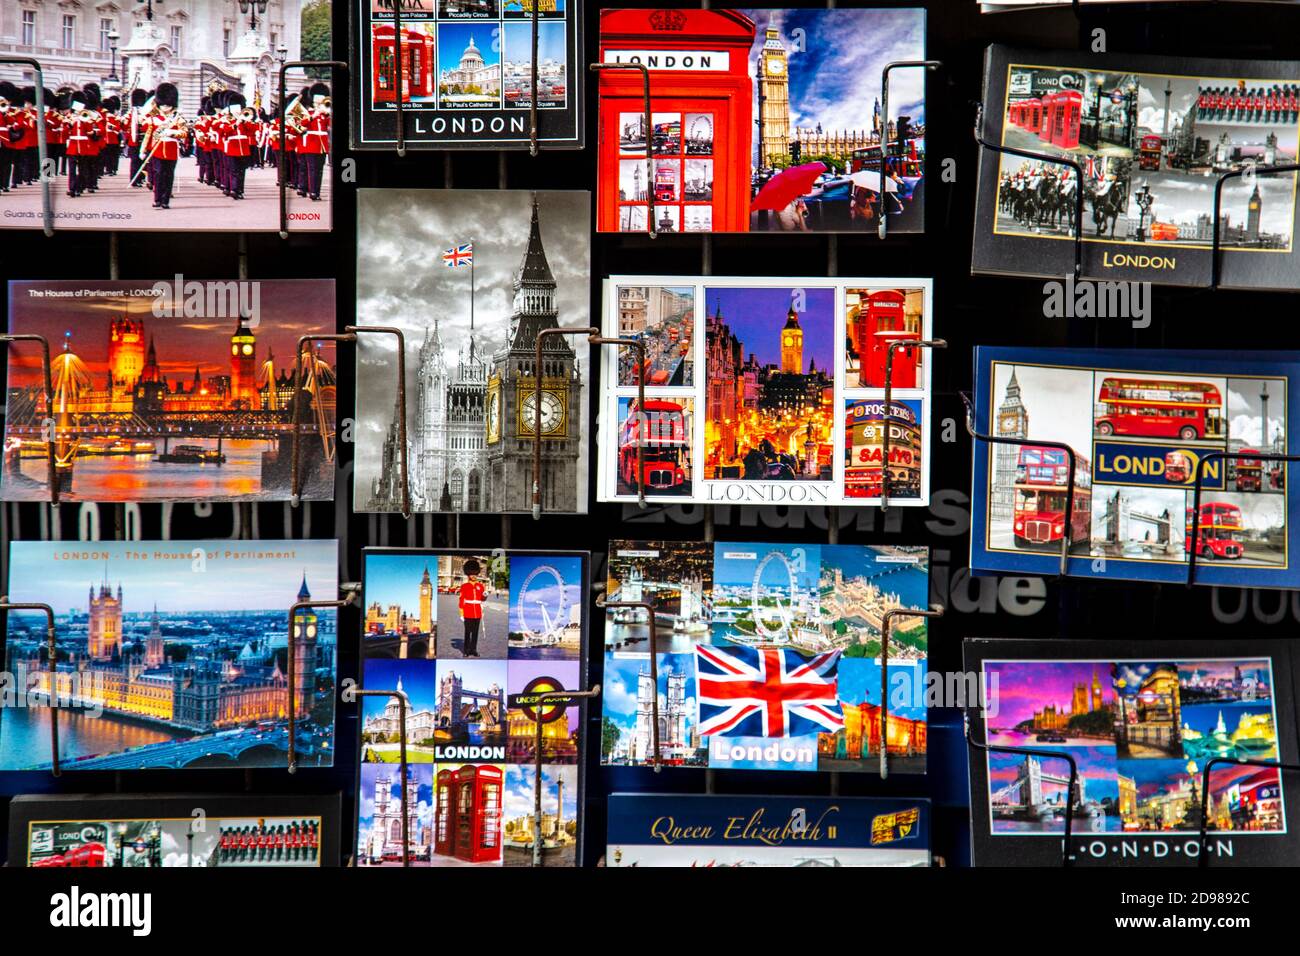 Postales de Londres en estanterías frente a una tienda de recuerdos, Londres, Reino Unido Foto de stock